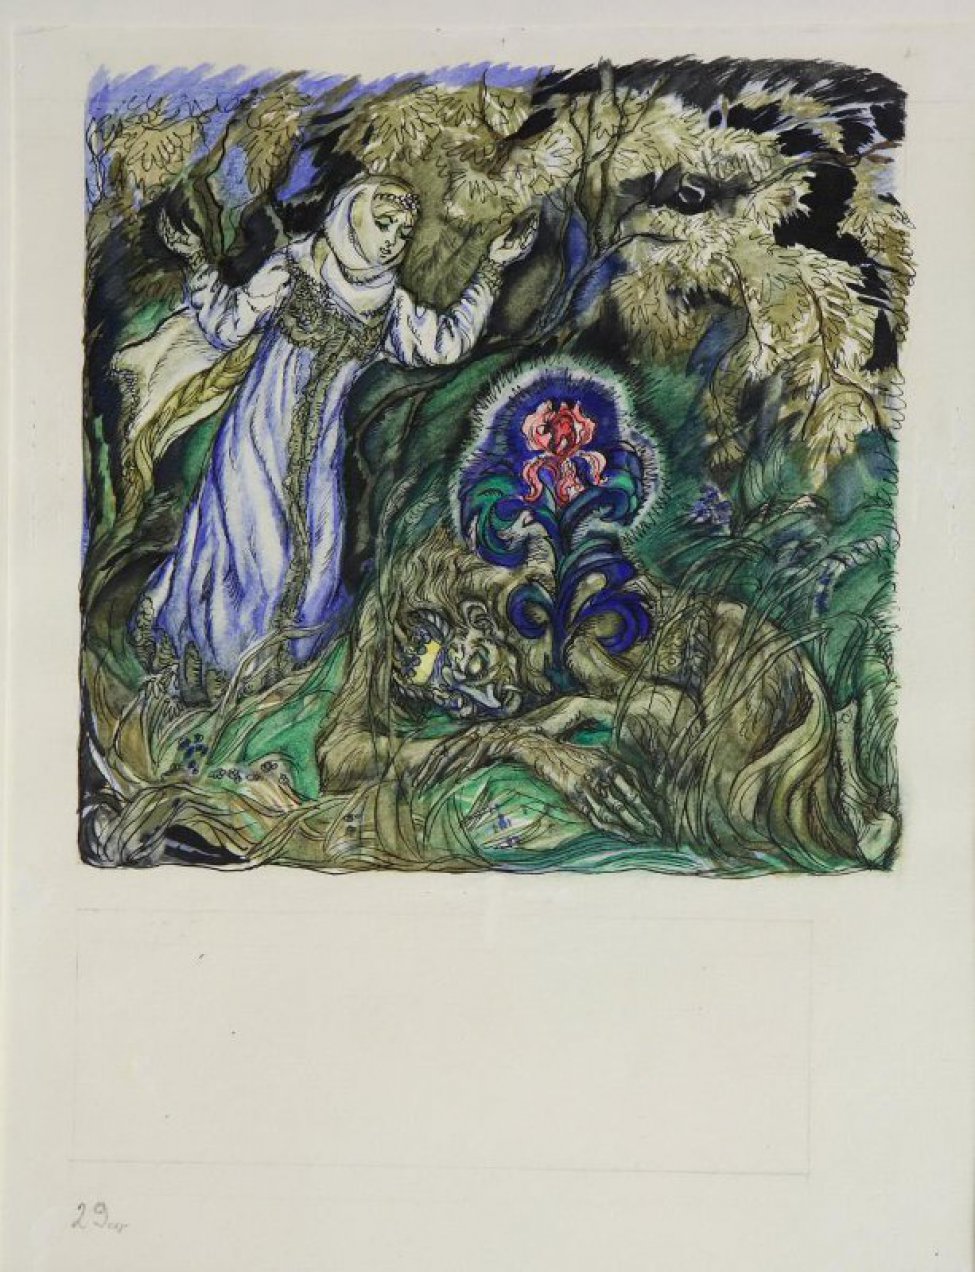 Изображена девушка в голубом сарафане с поднятыми вверх руками и "чудище" с короной на голове, лежащий на зеленом пригорке и обнимающий лапами цветы.